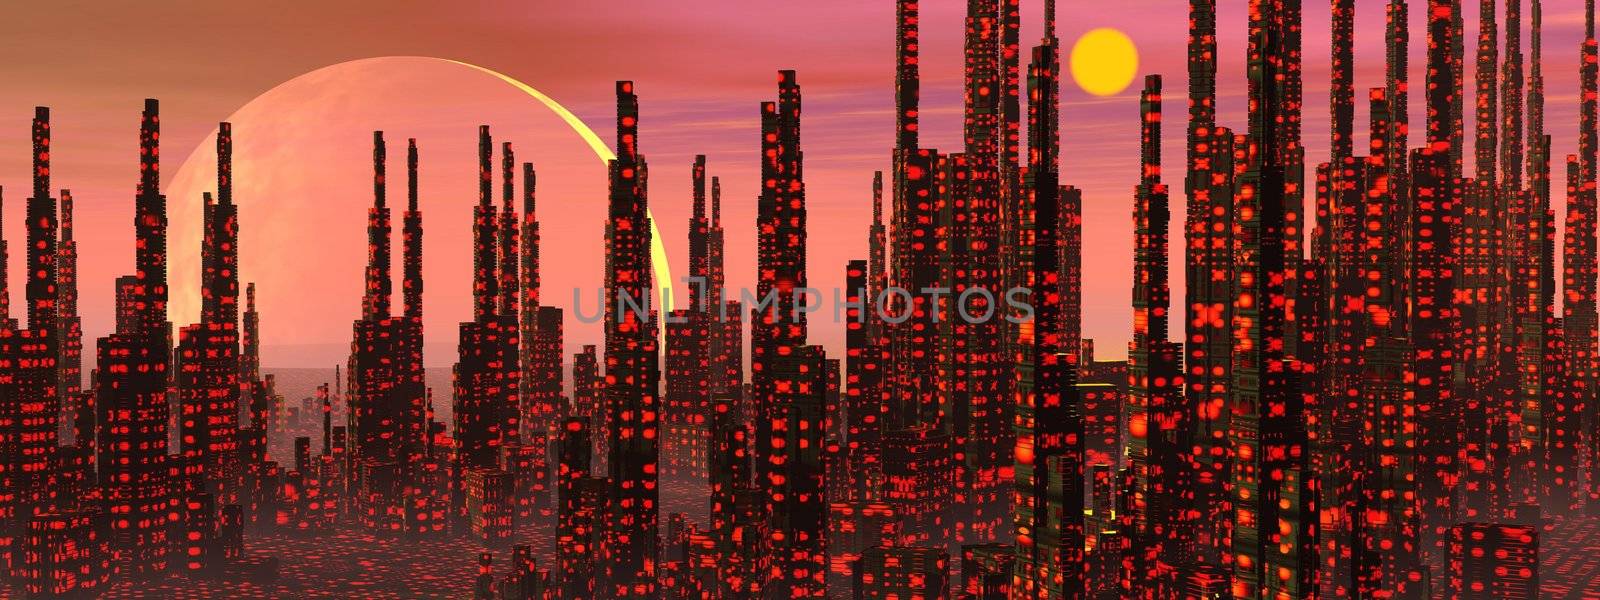 Fantasy city - 3D render by Elenaphotos21